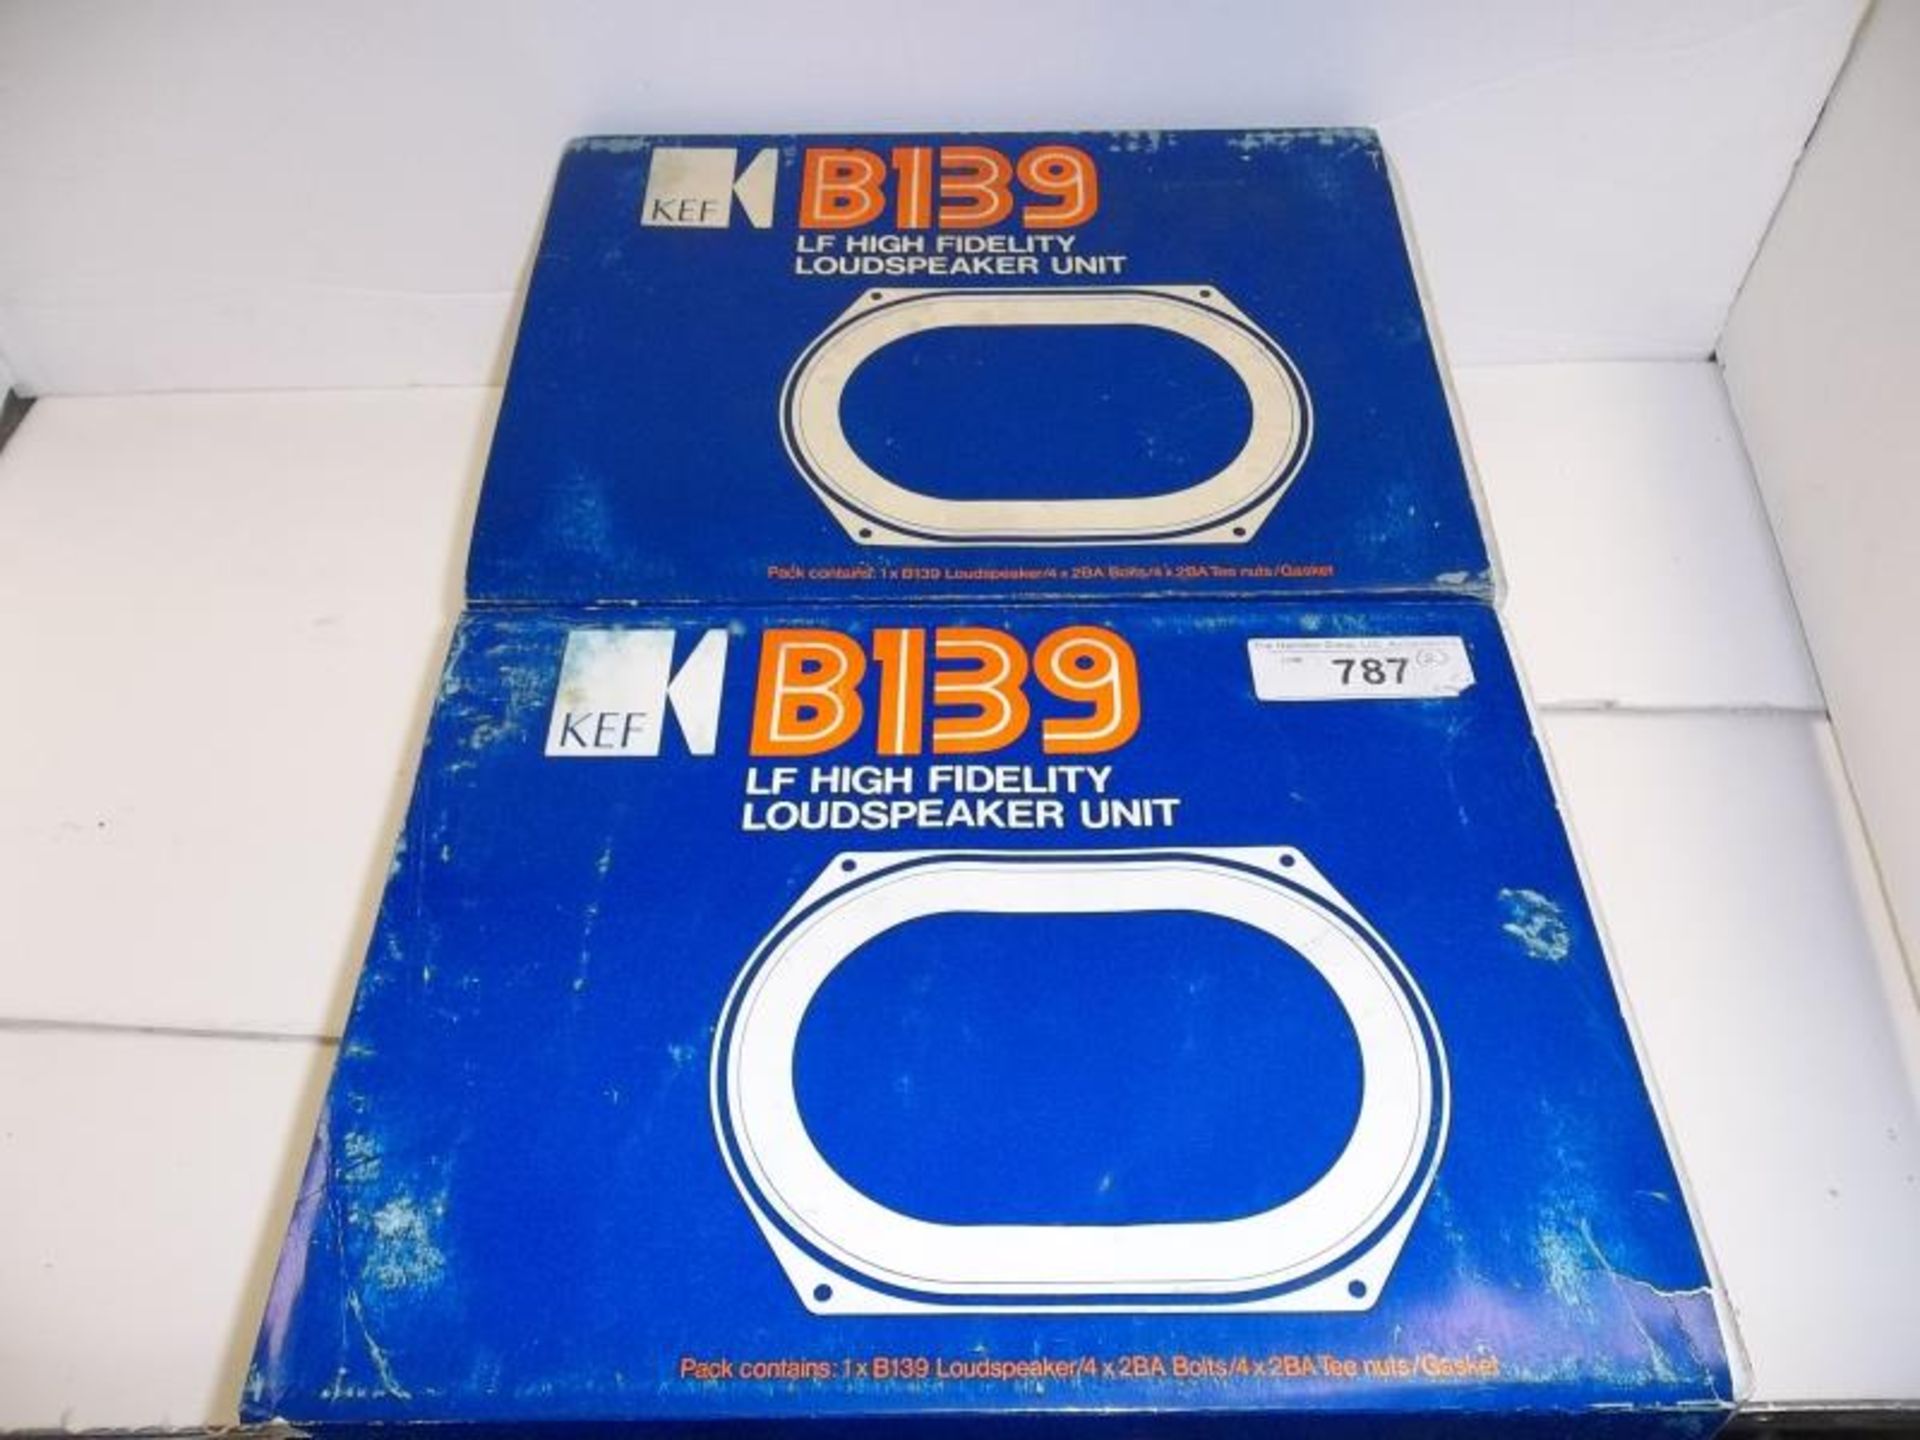 2 KEF B139 loudspeaker units in orig box, 8 ohms - Image 7 of 7